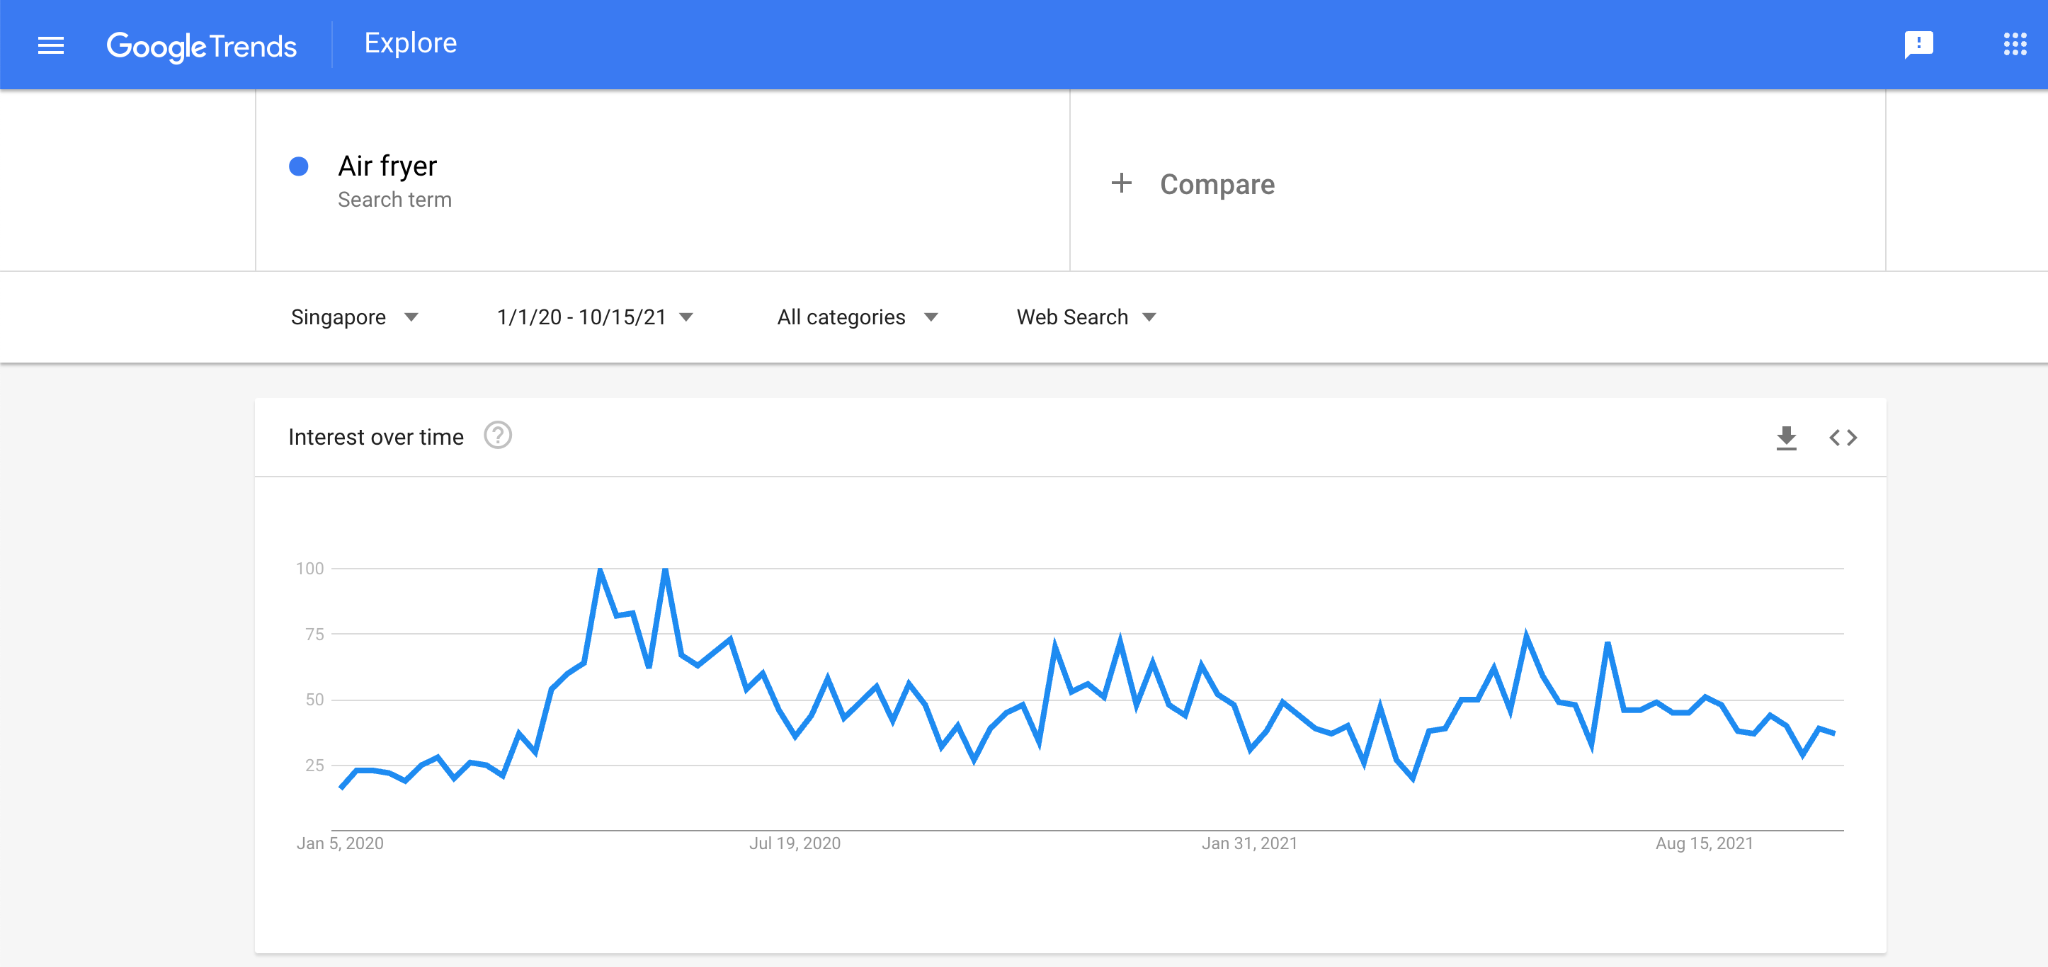 Google Trends Data Air fryer